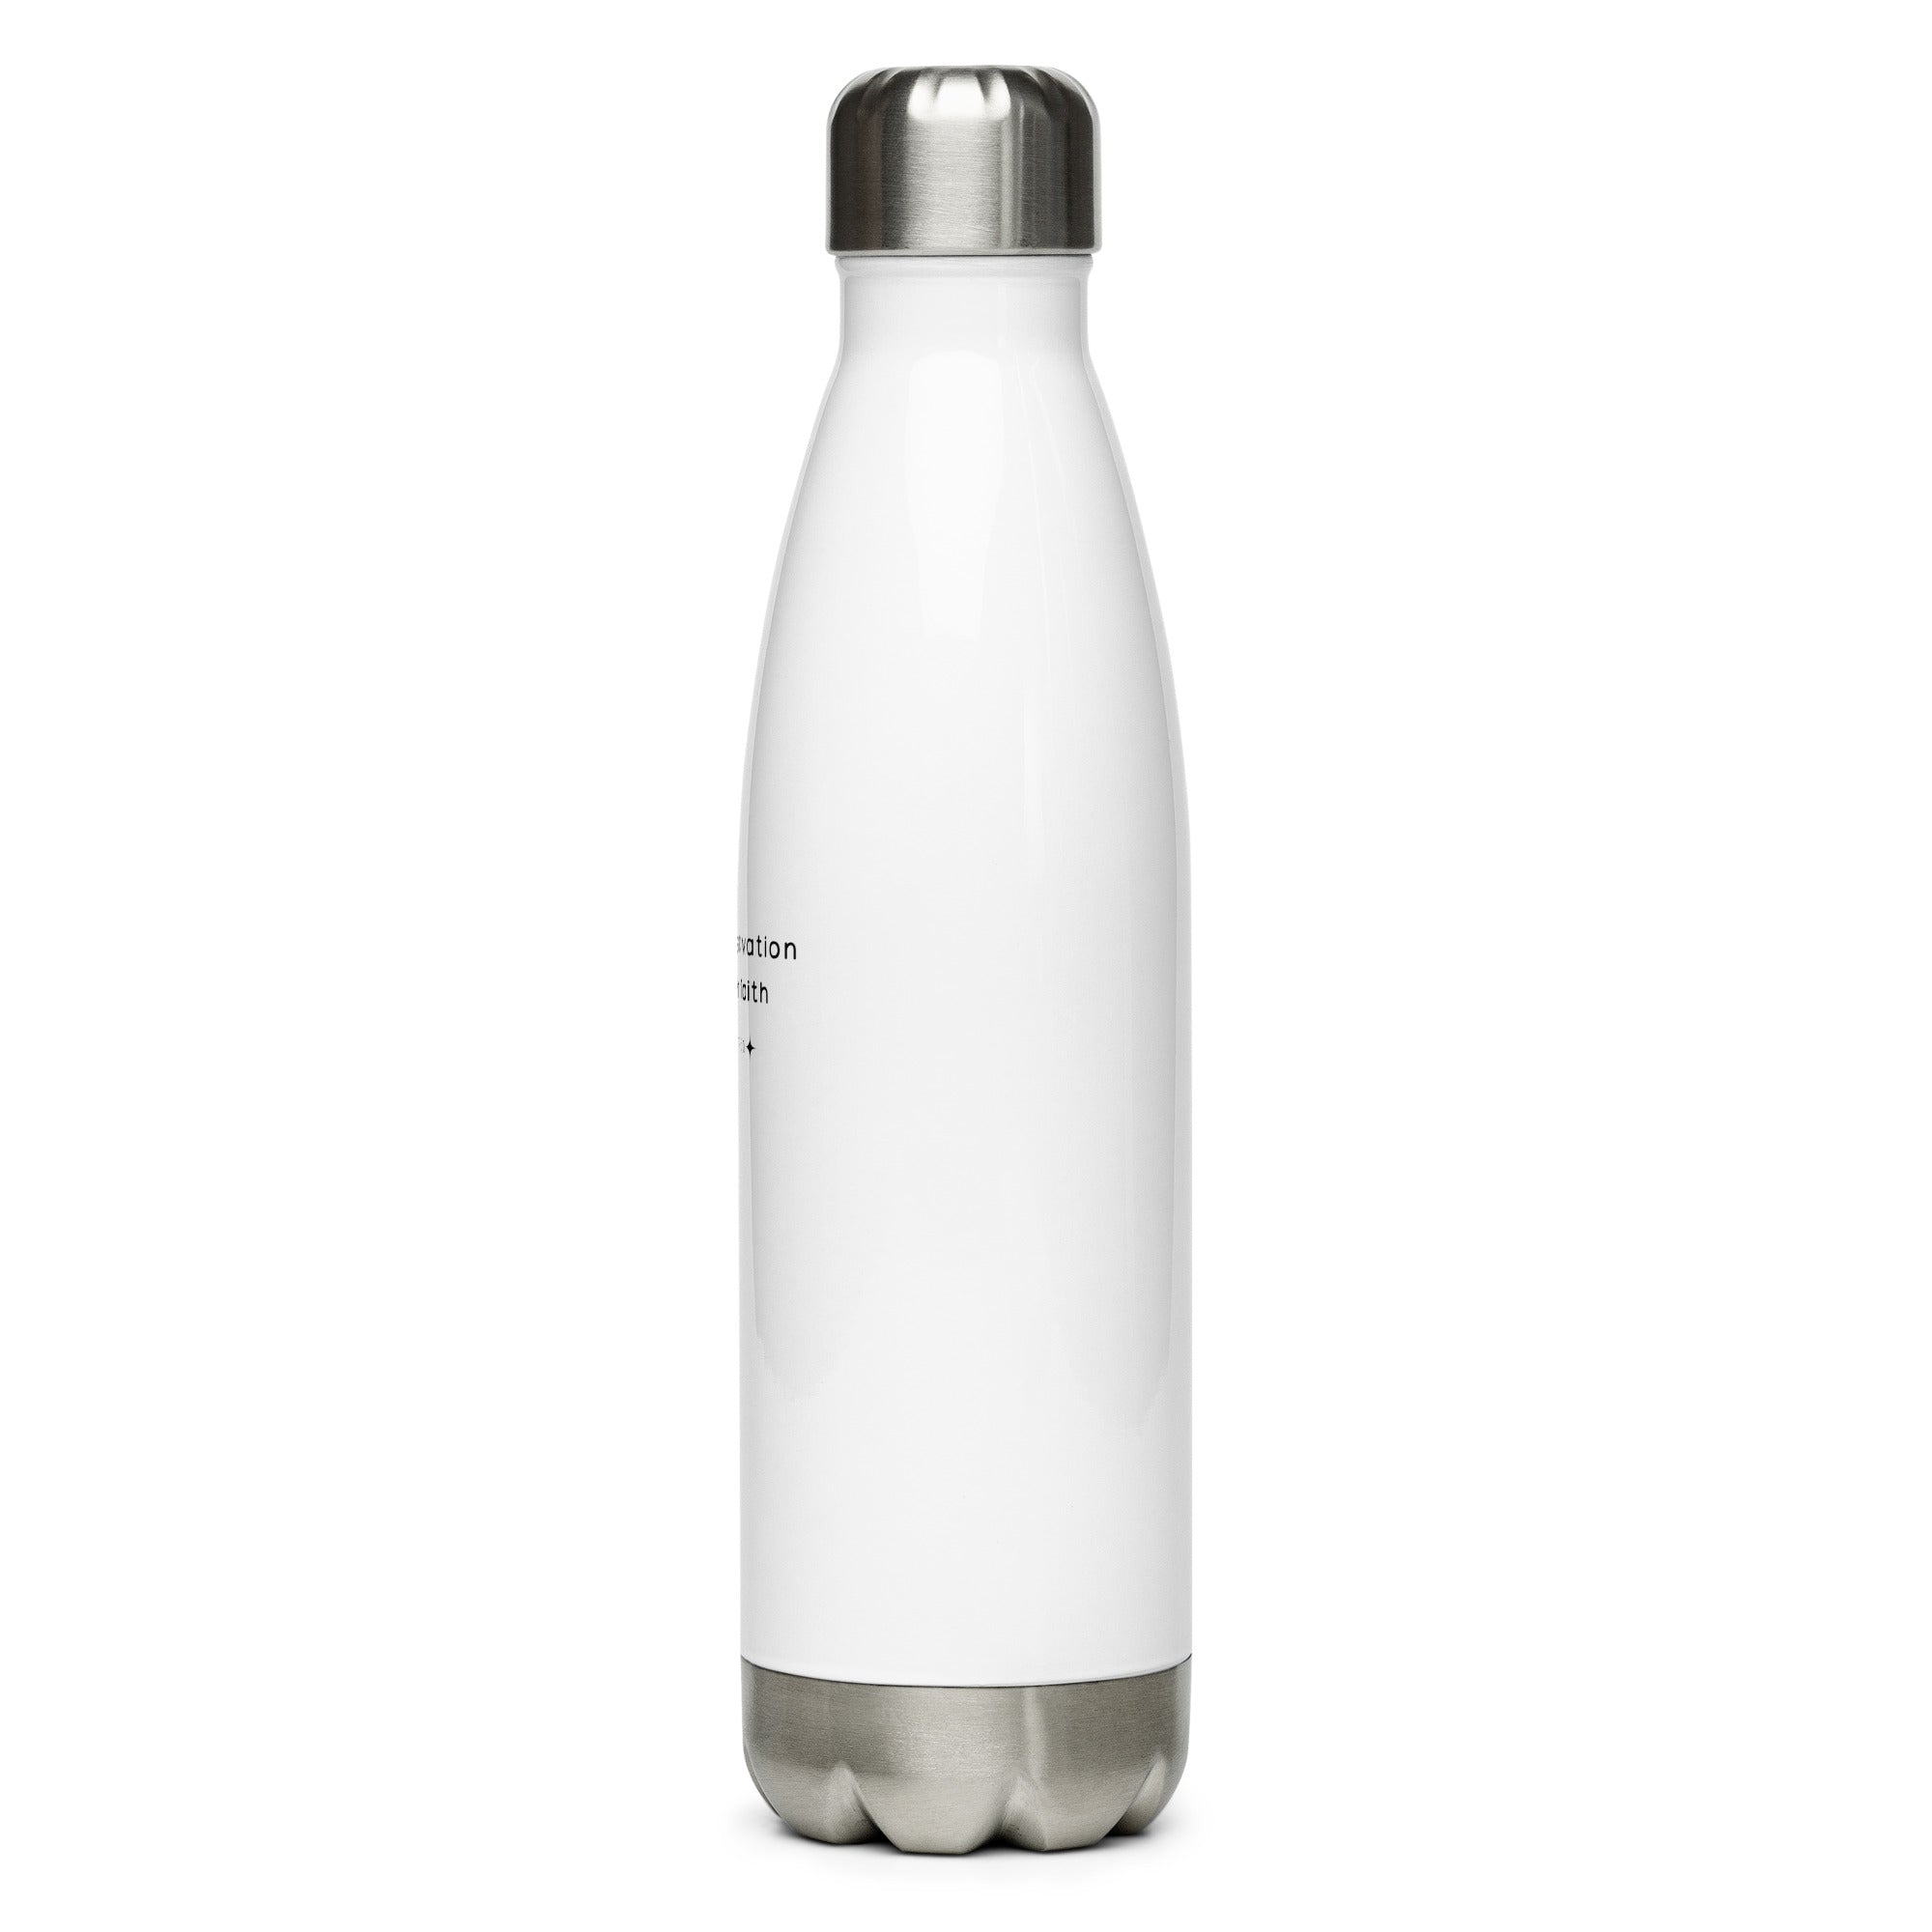 Stainless steel water bottle - Luke 7:50